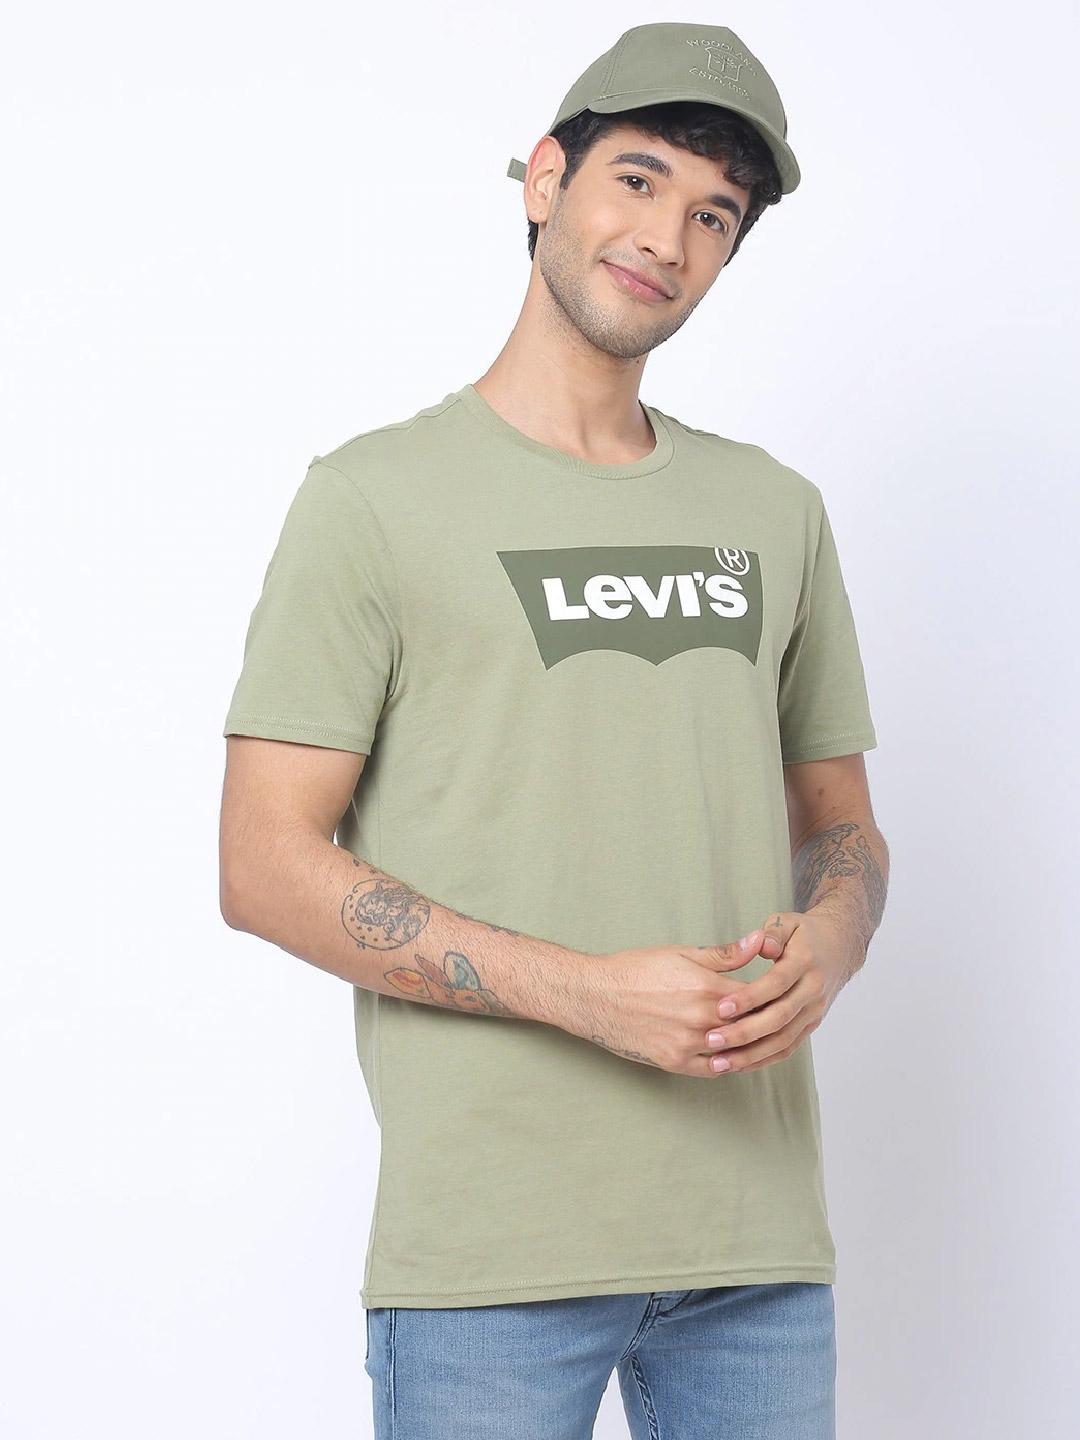 levi's tshirt